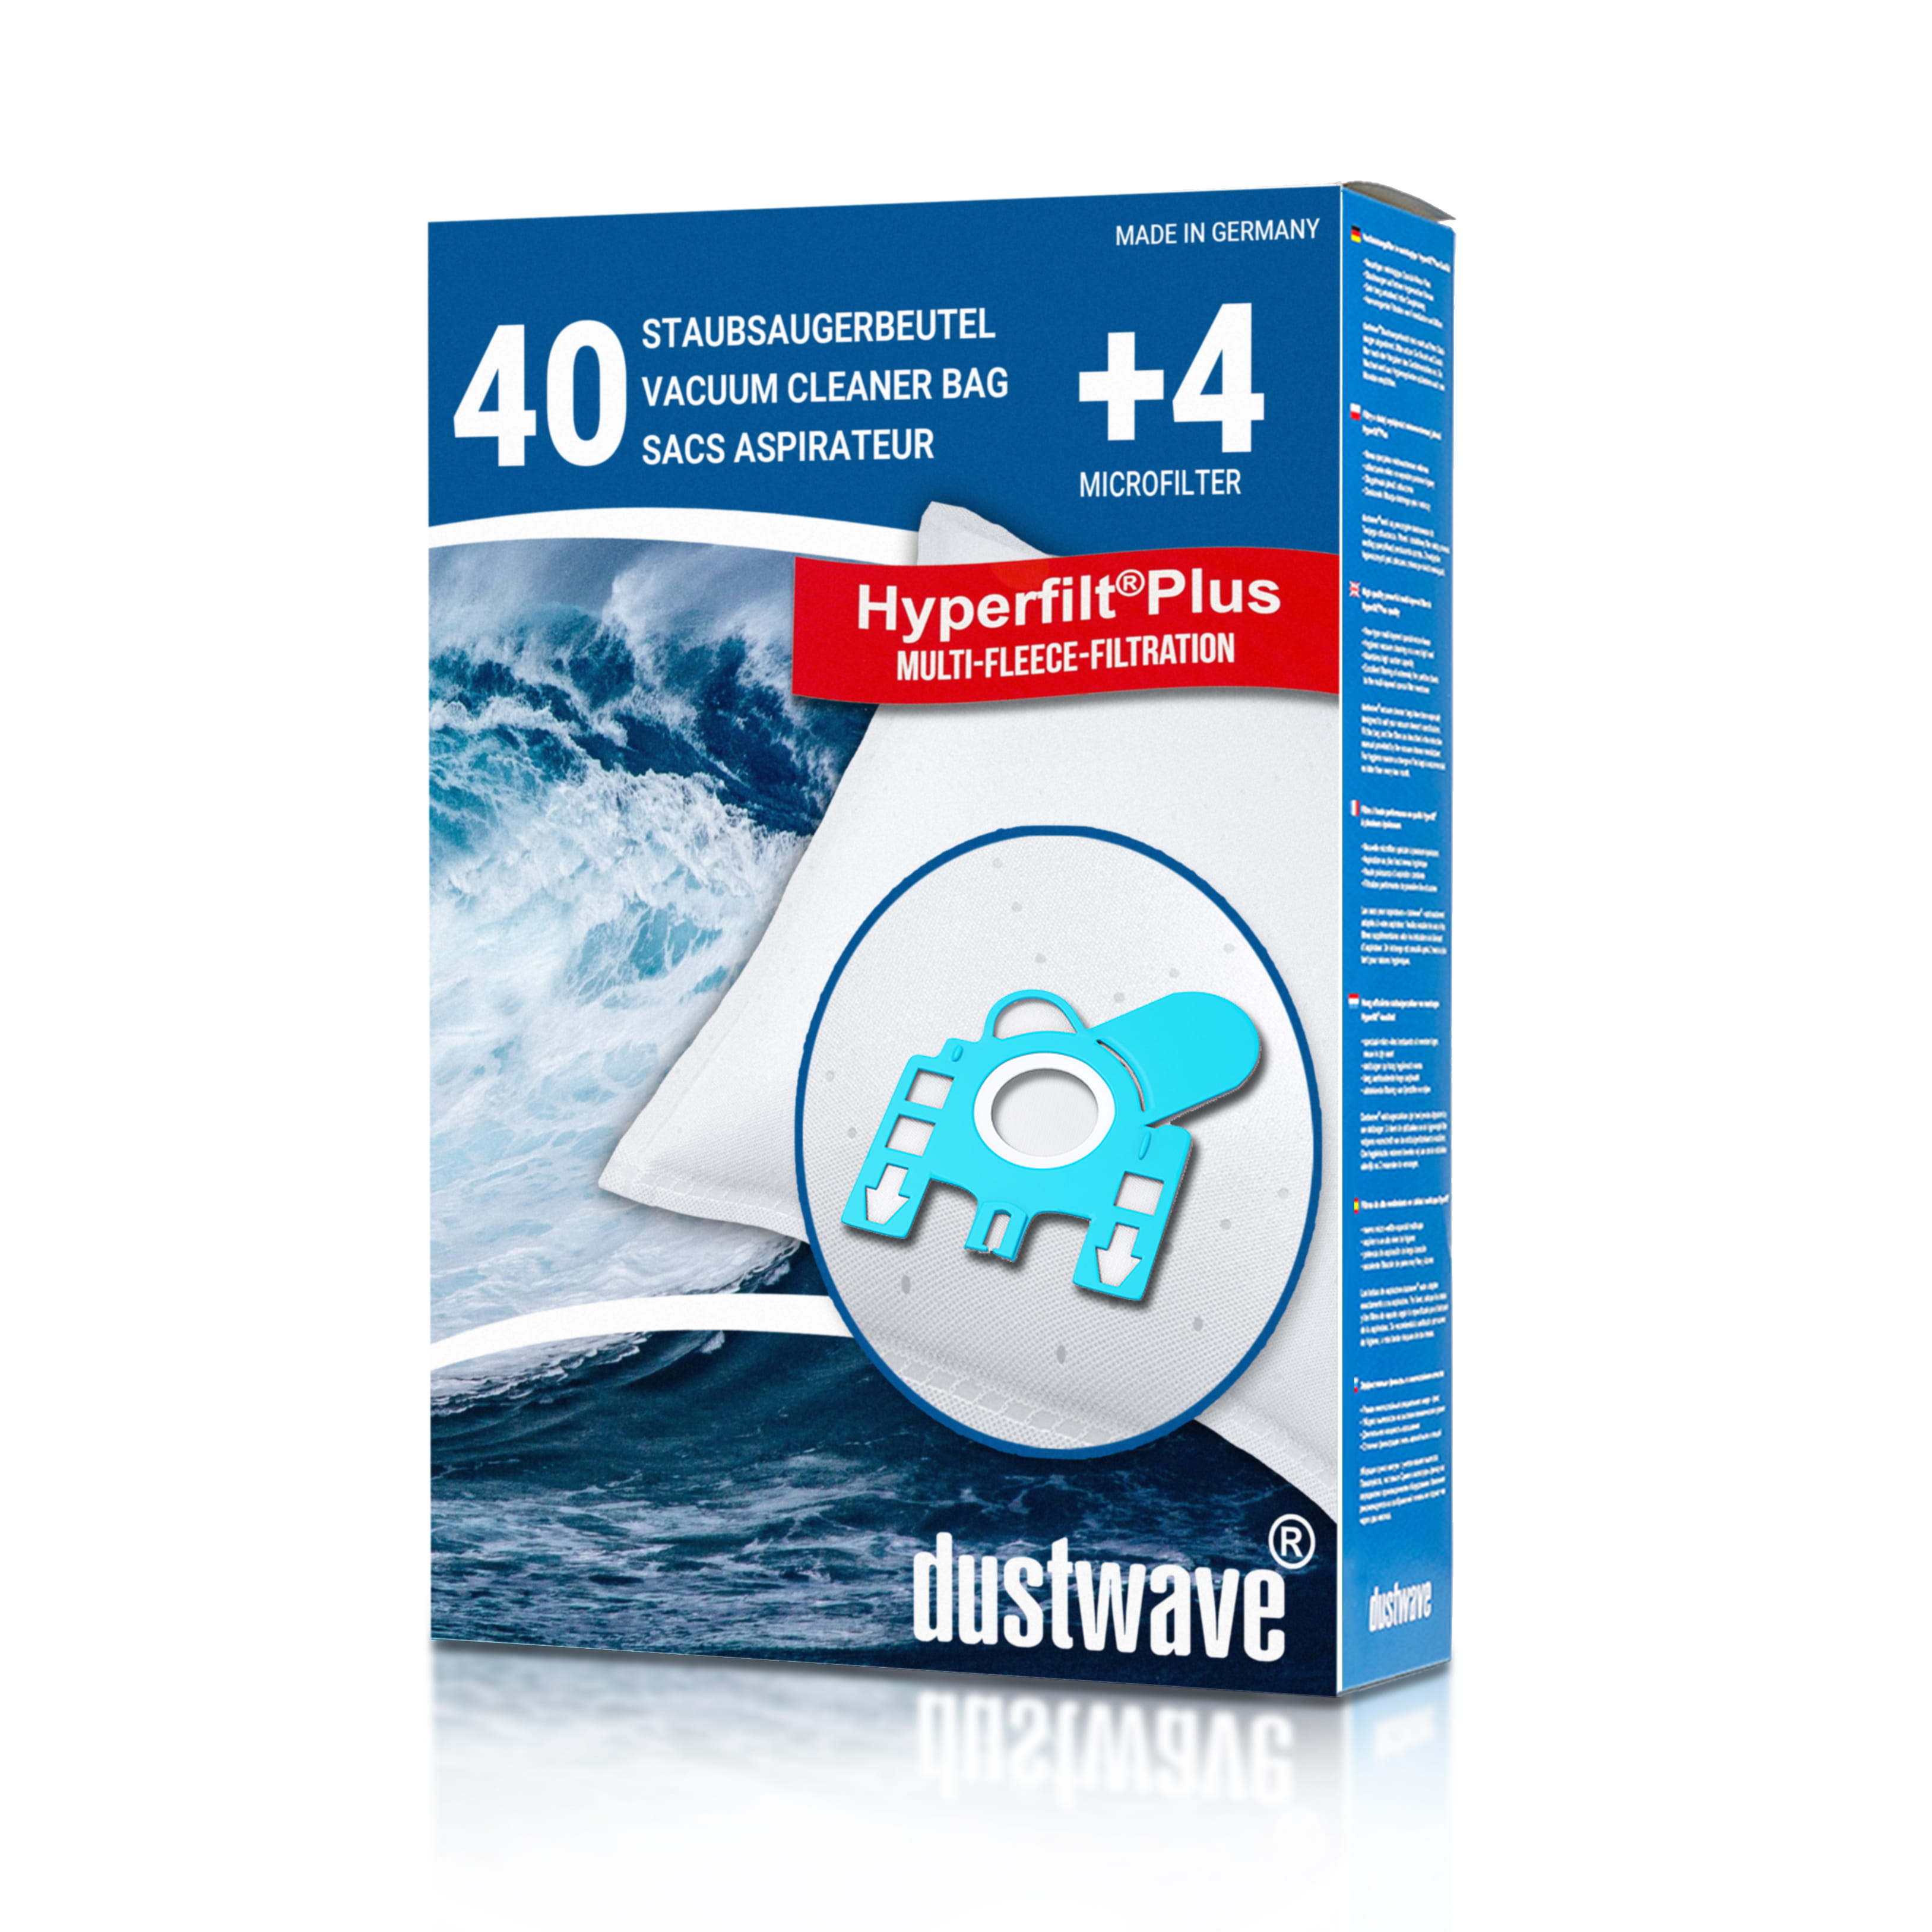 Dustwave® 40 Staubsaugerbeutel für Hoover 39000227 - hocheffizient, mehrlagiges Mikrovlies mit Hygieneverschluss - Made in Germany